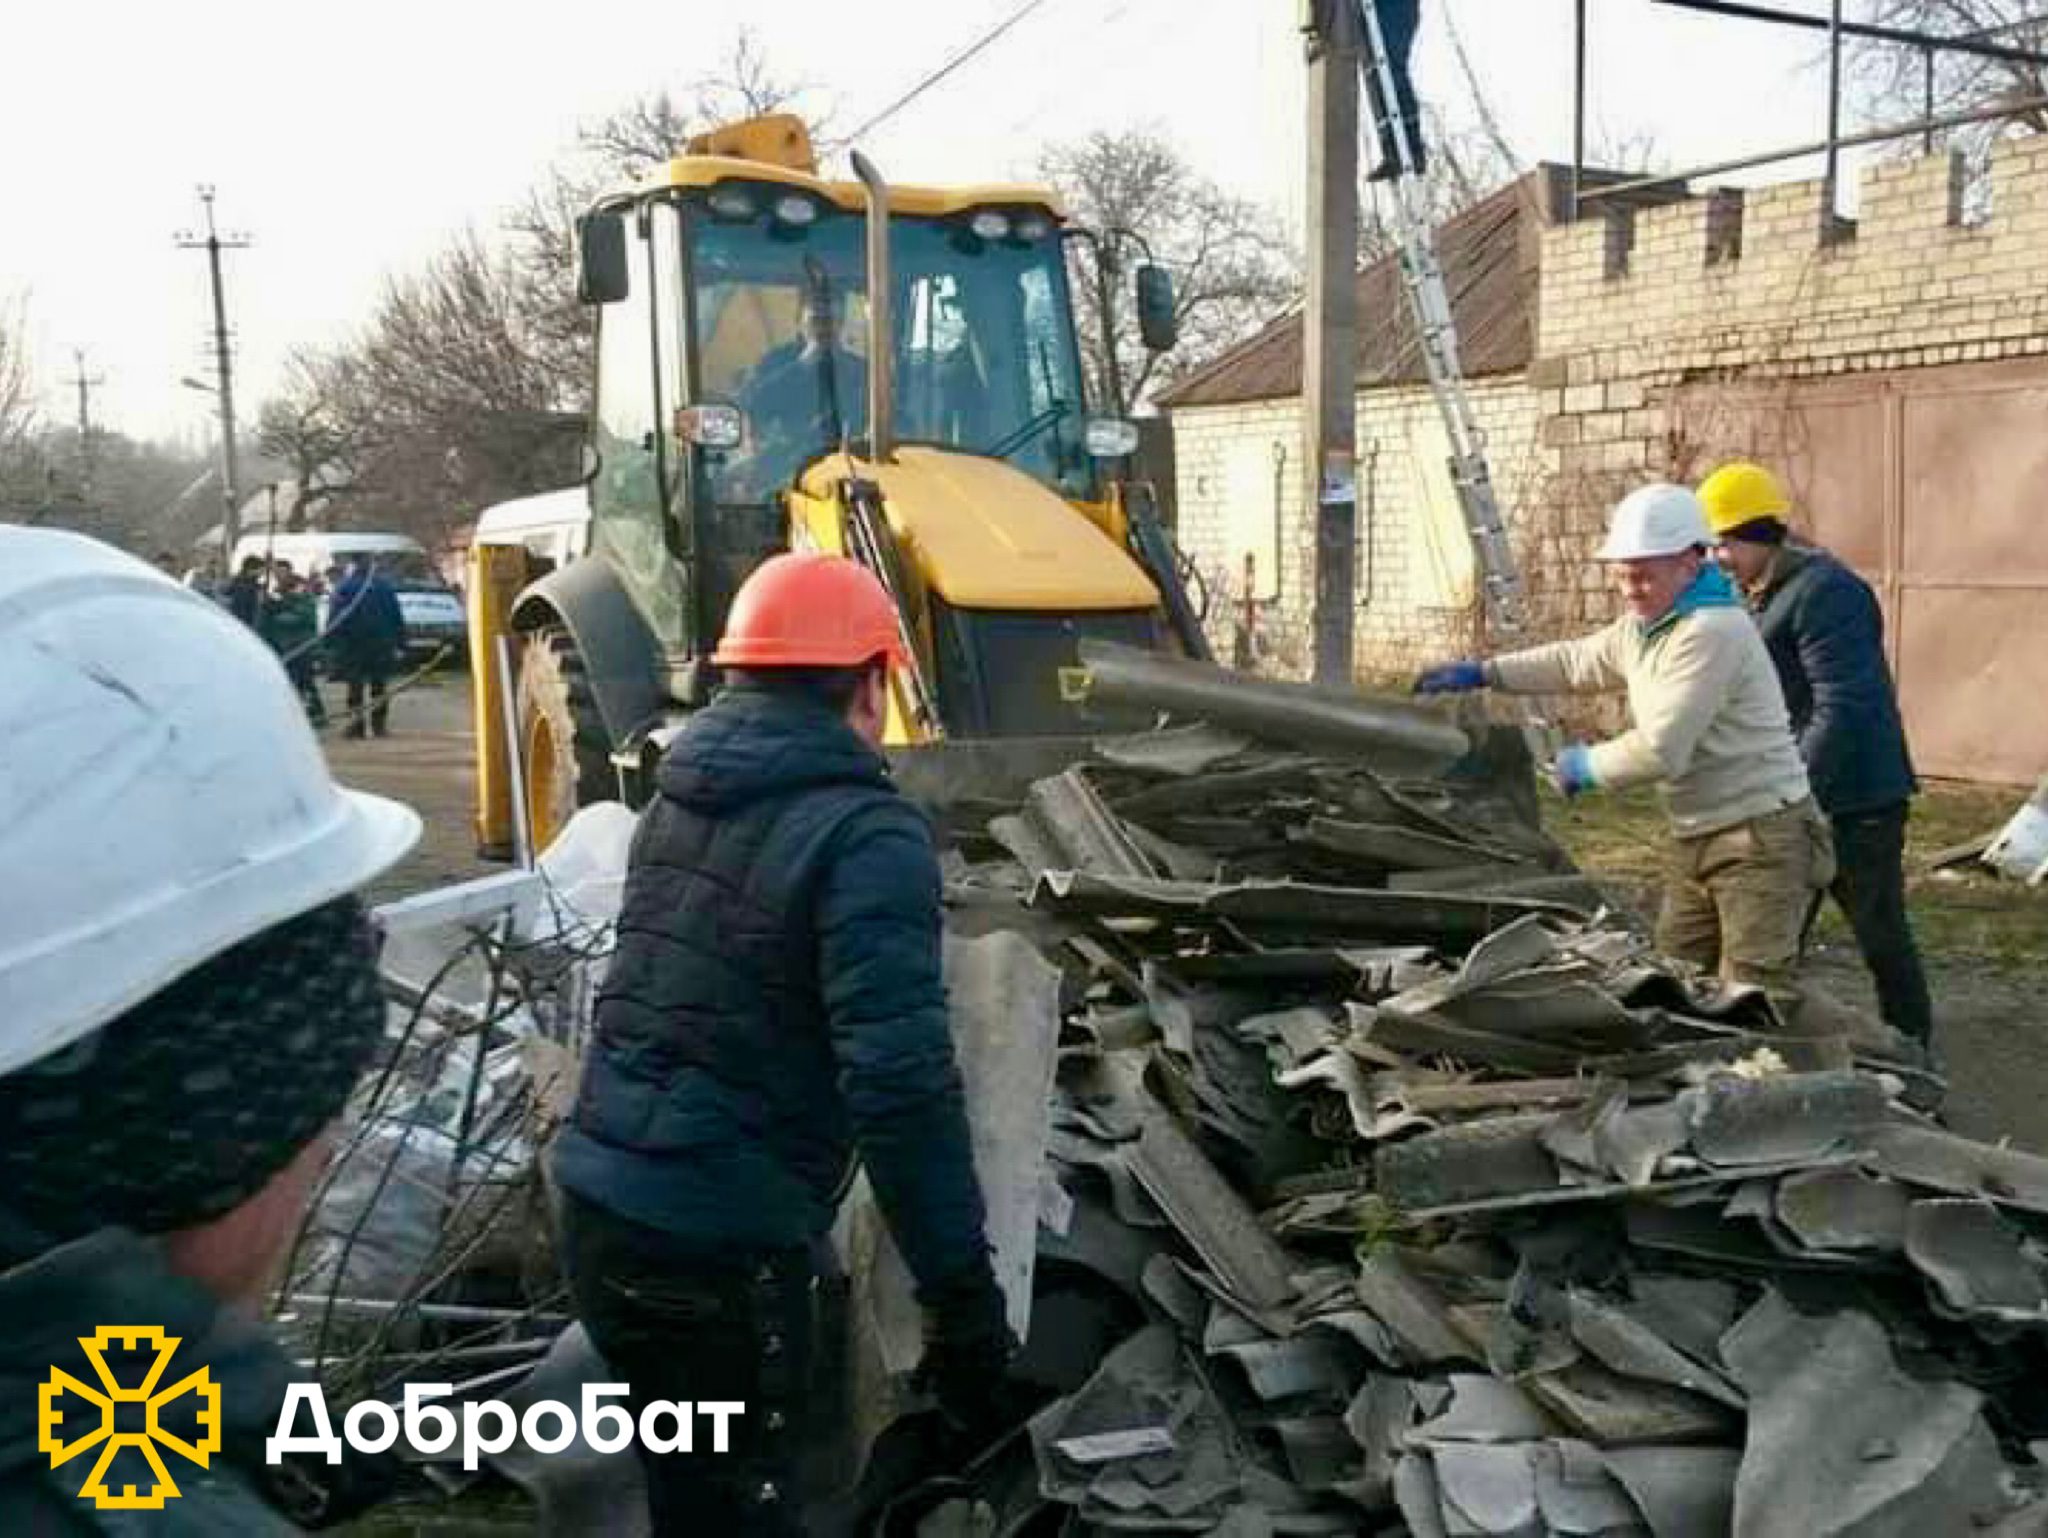 Починаємо новий рік, як годиться — з відбудови країни та допомоги українцям.